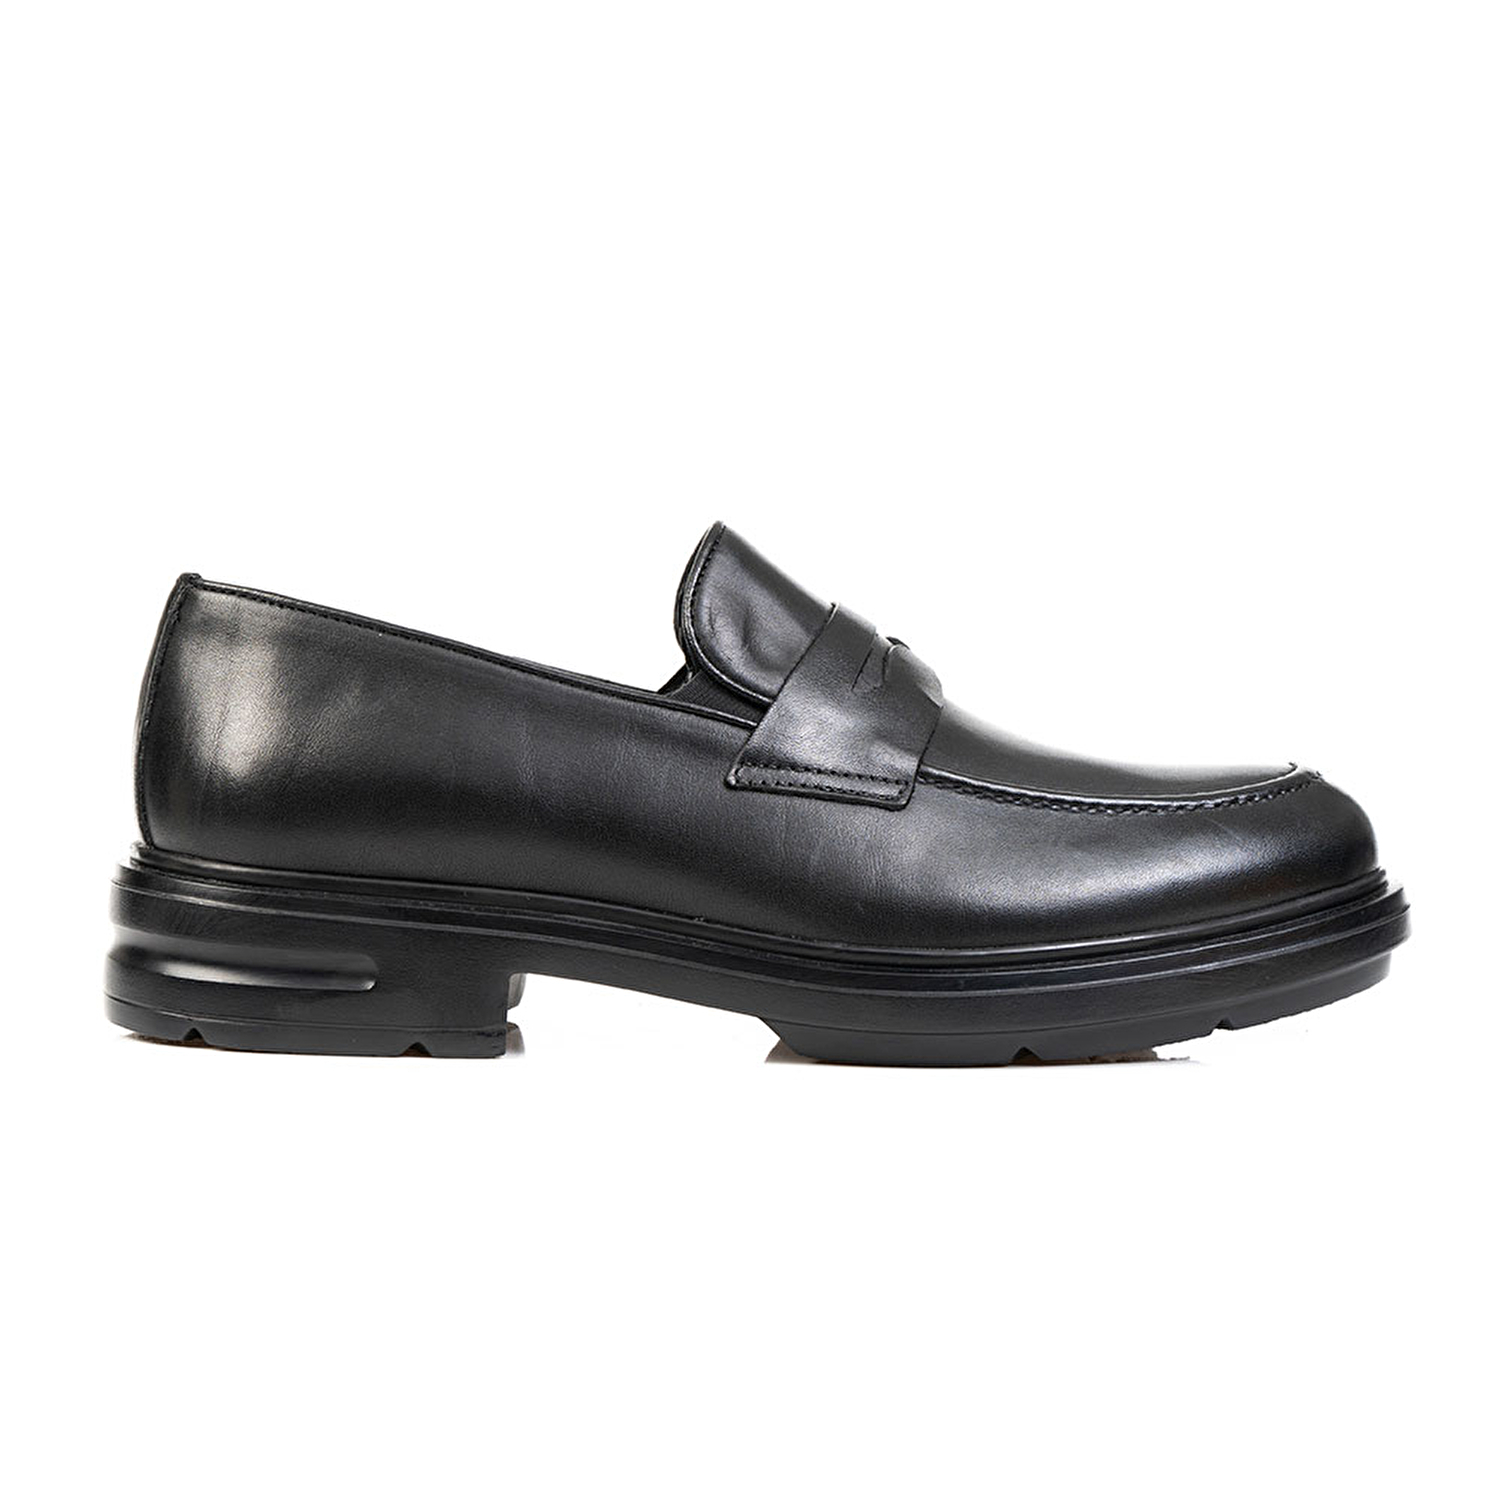 Klasik Erkek Ayakkabı Siyah Deri 67797-1